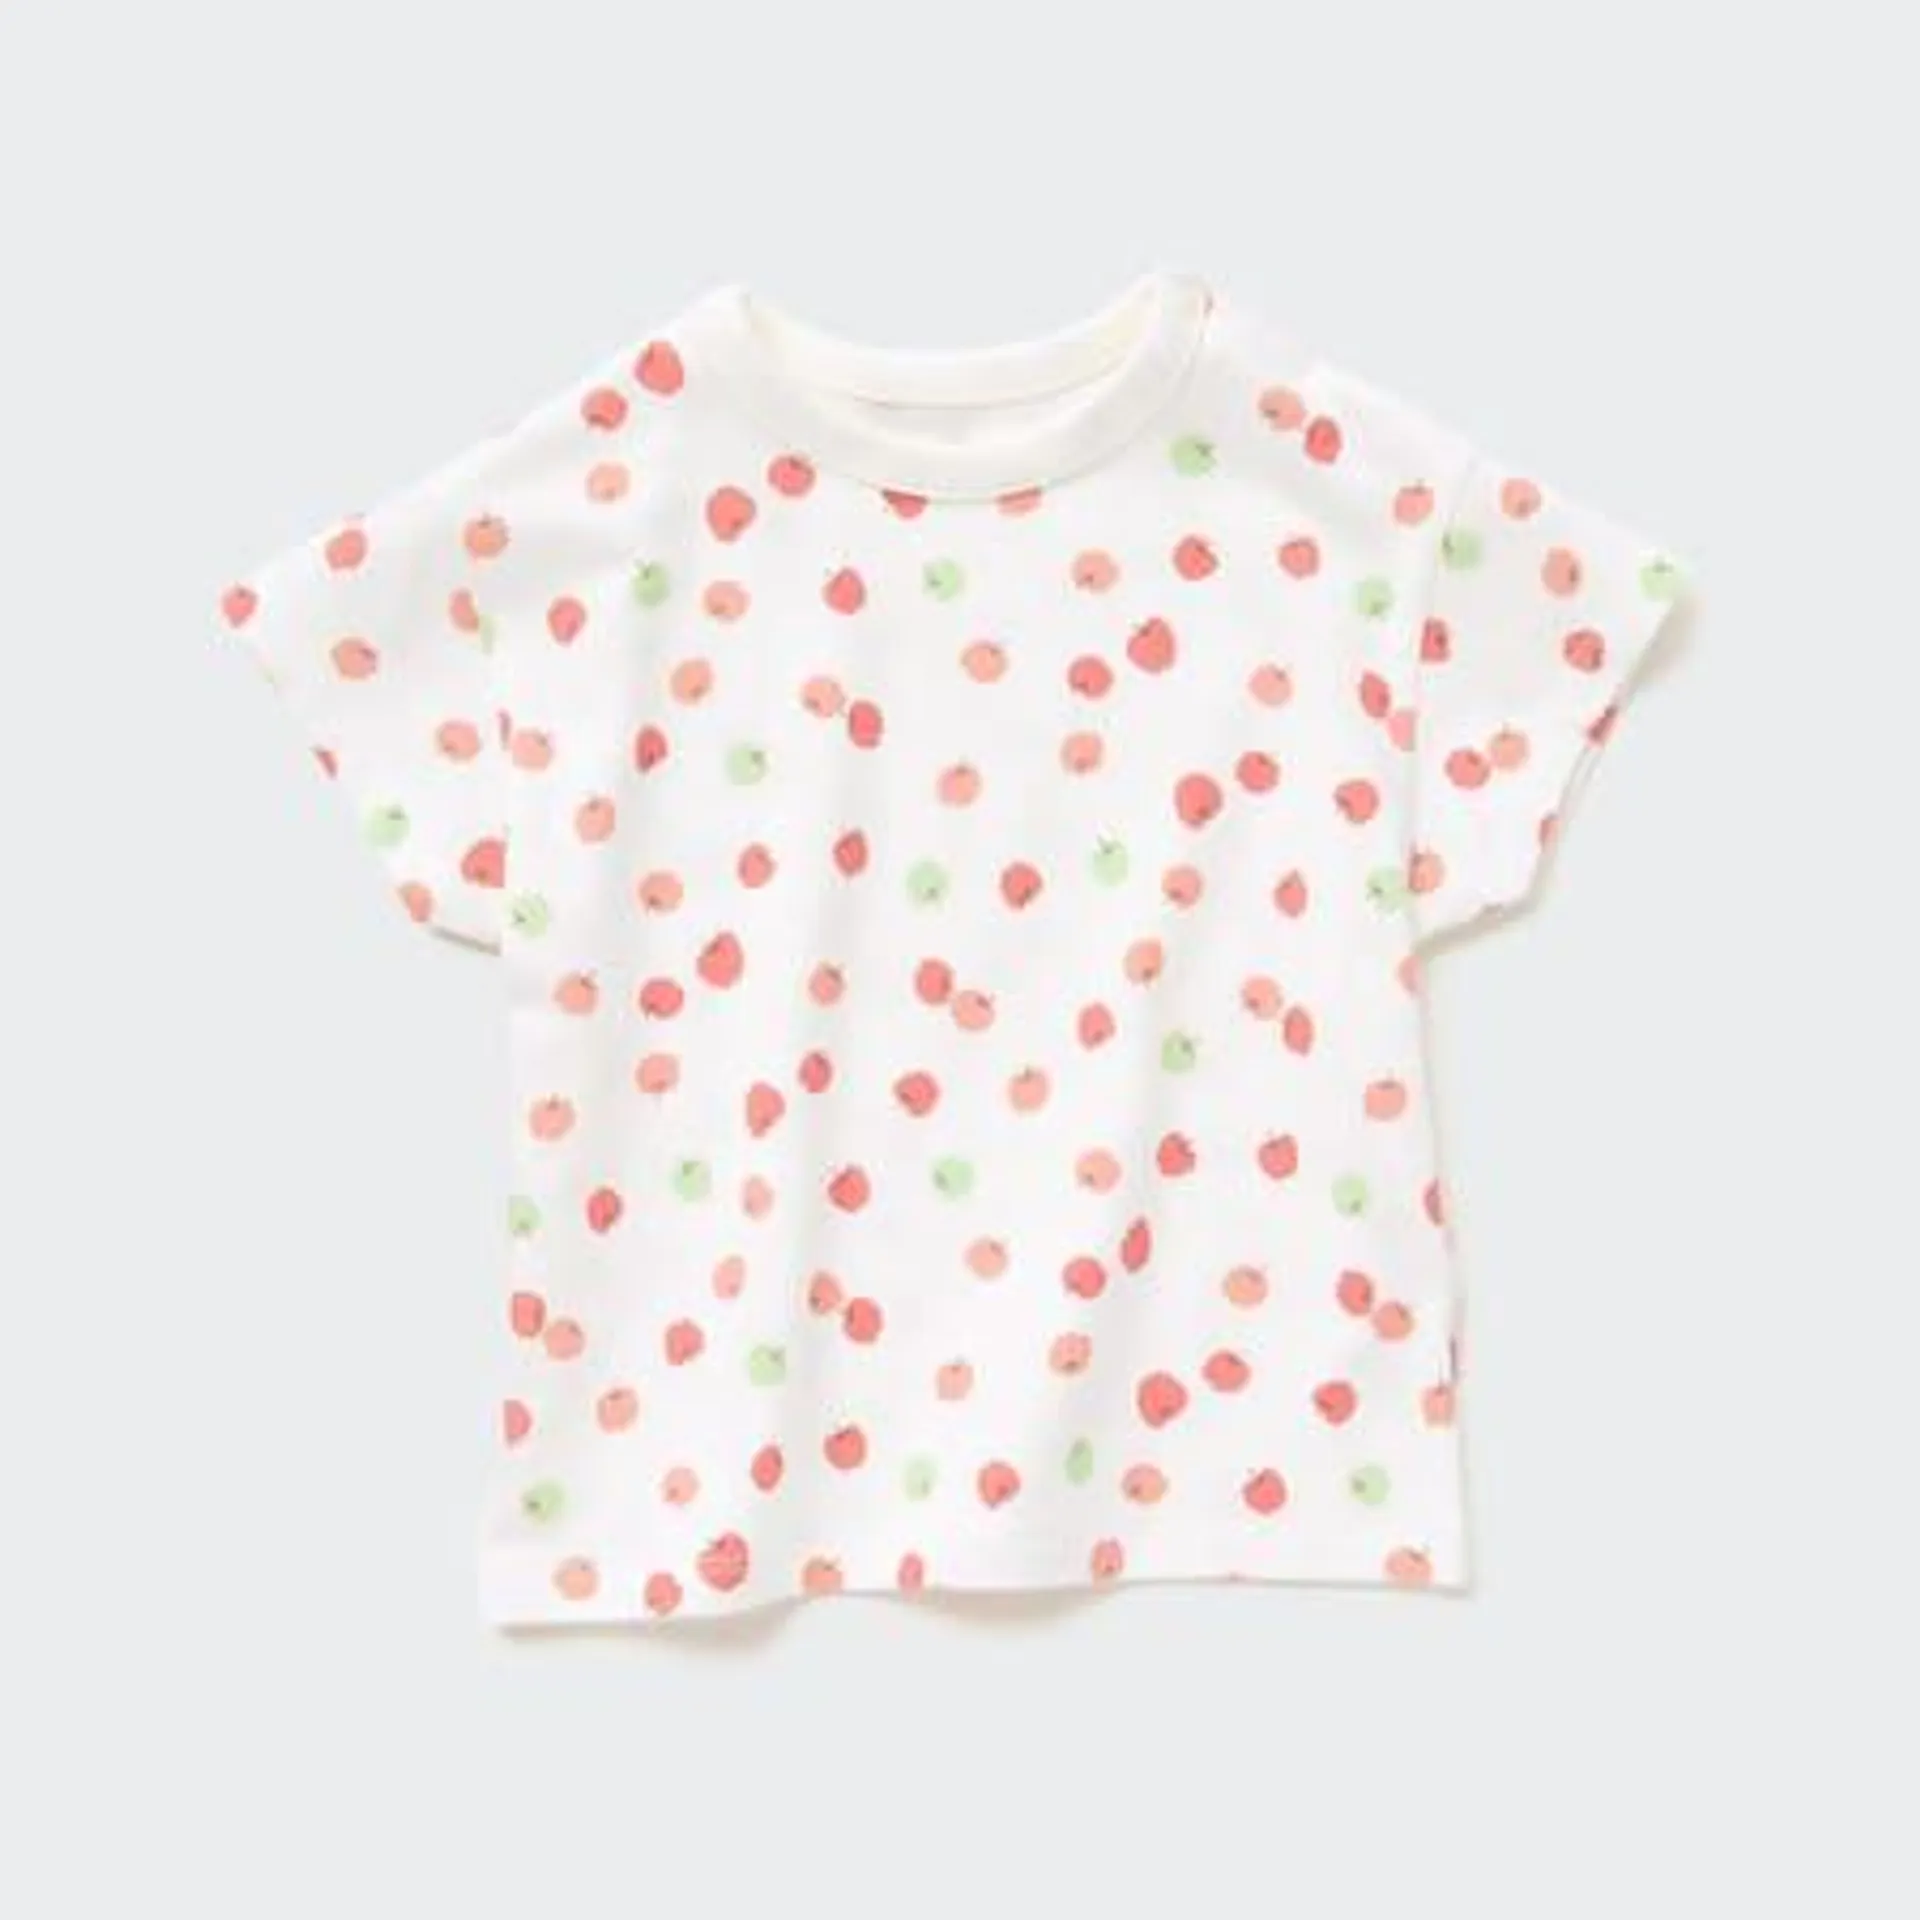 Toddler DRY Fruit Print Crew Neck Short Sleeved T-Shirt